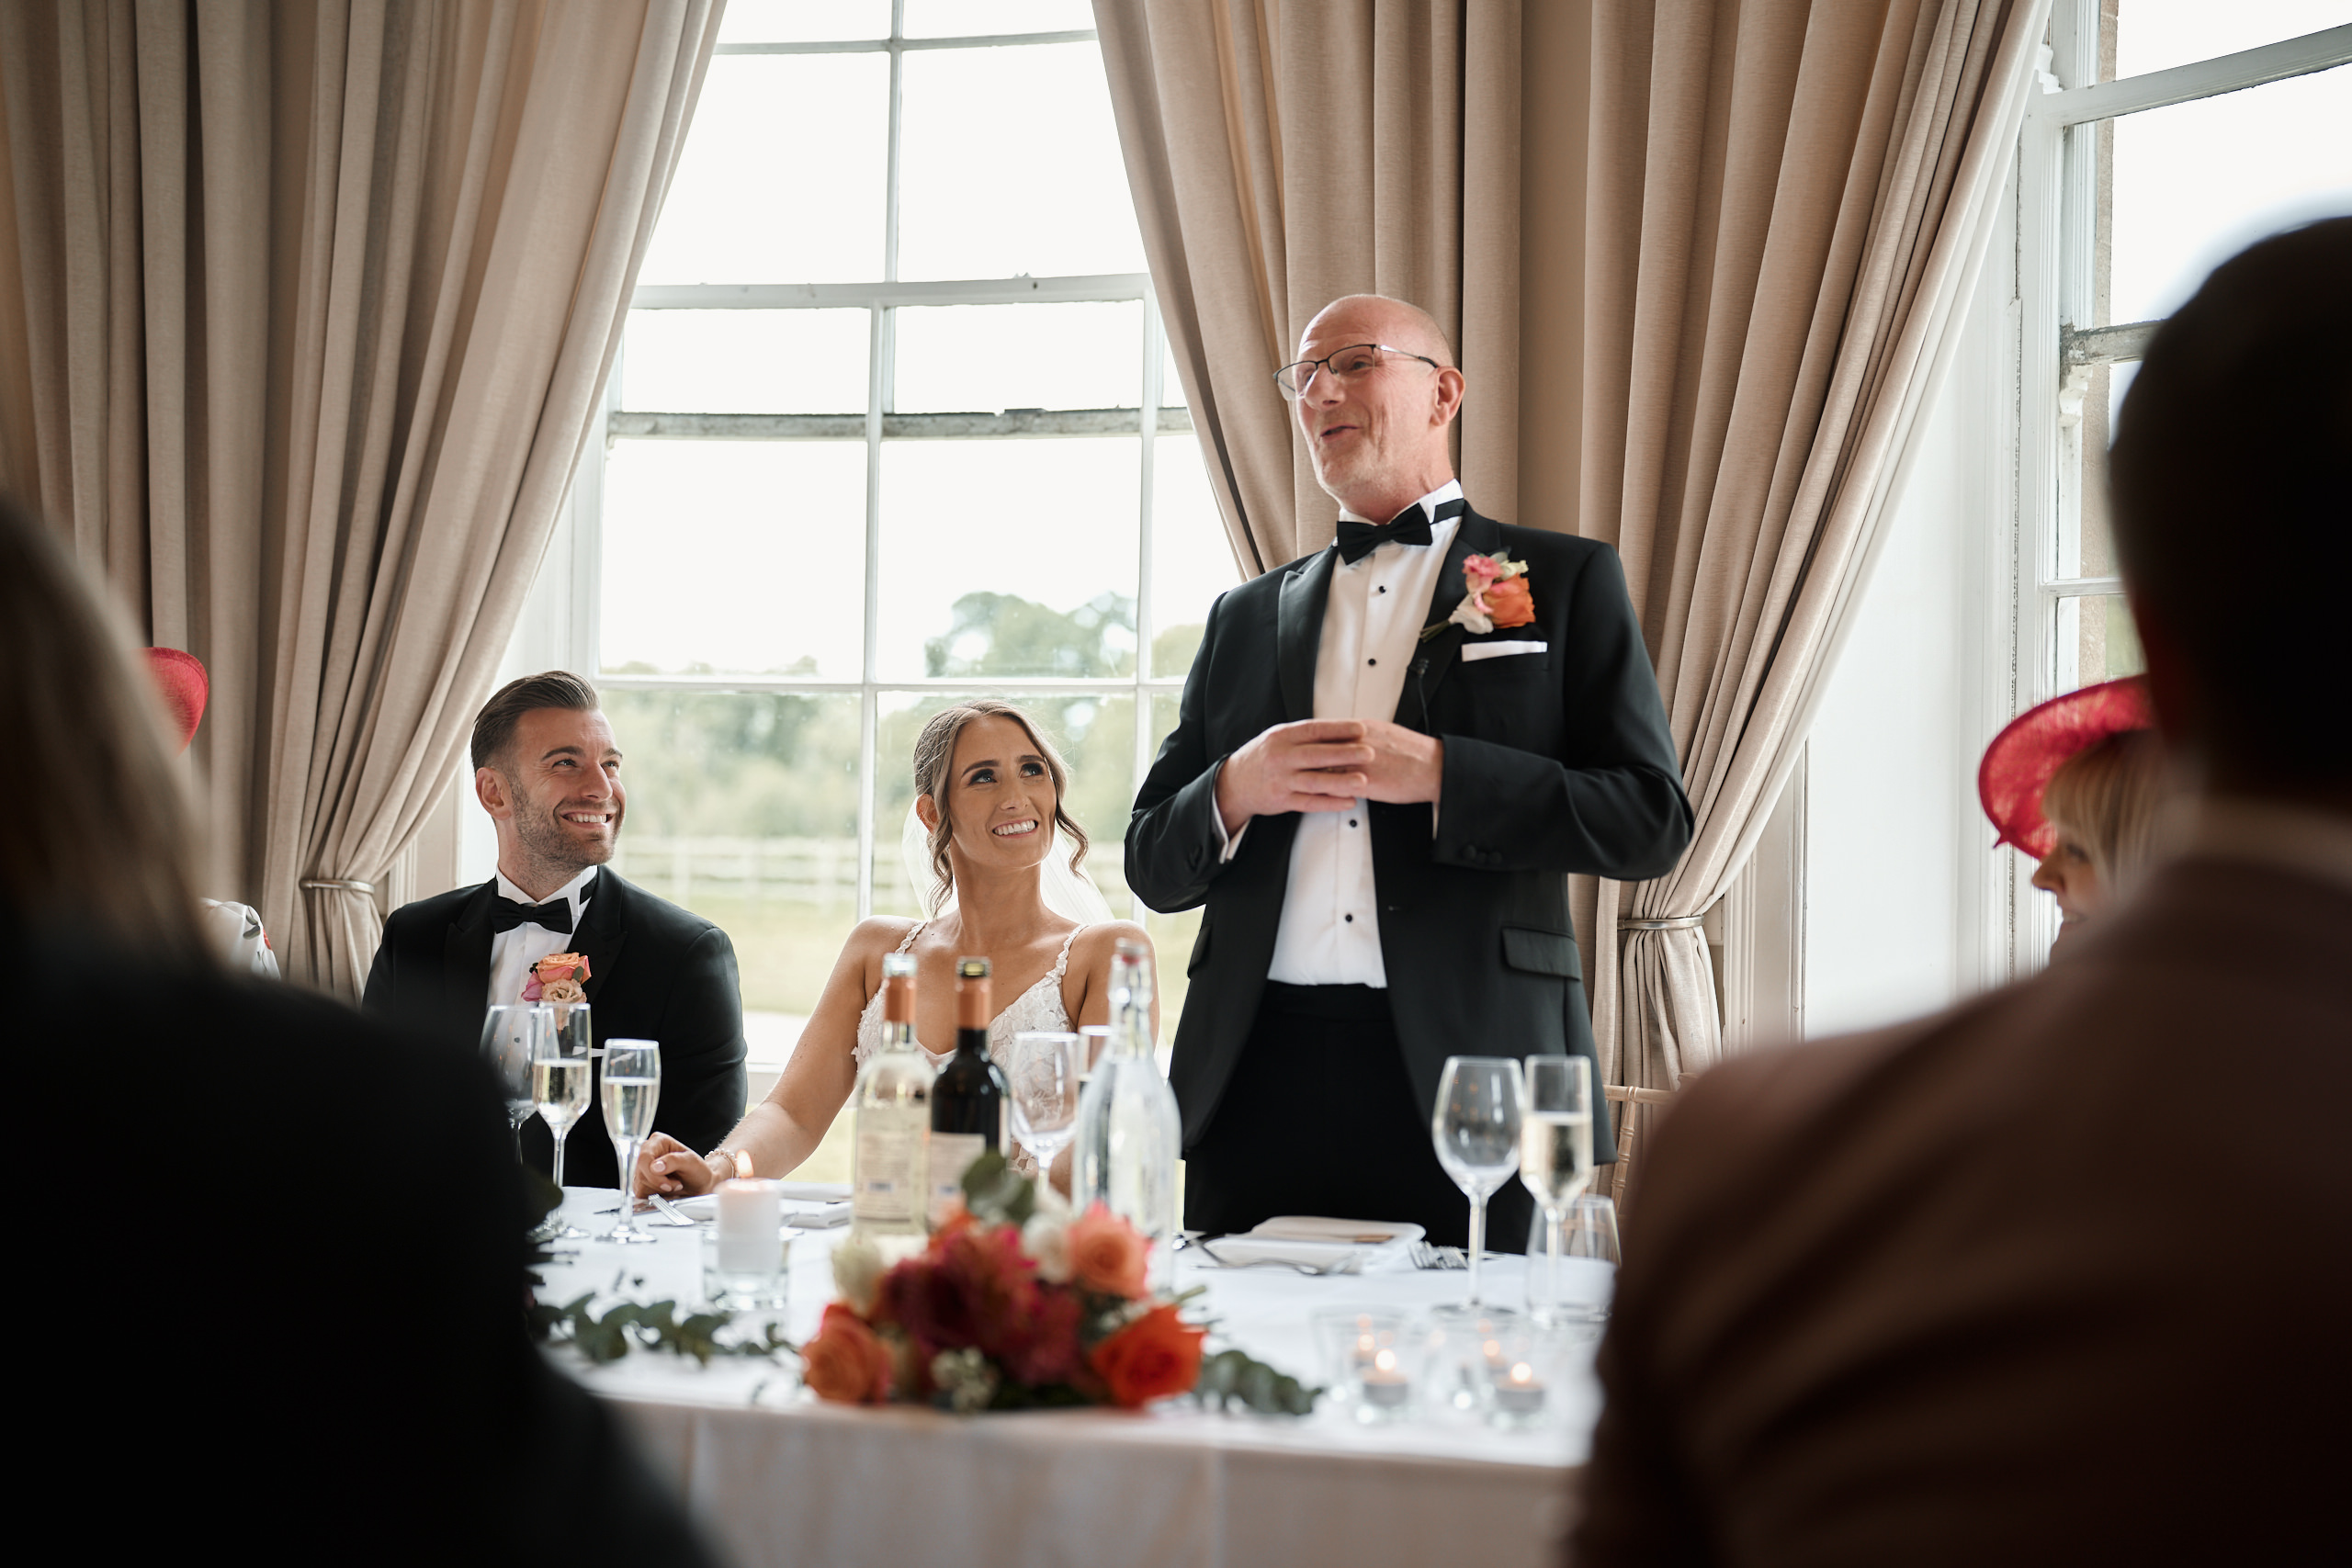 A man in a tuxedo giving a speech at a wedding.